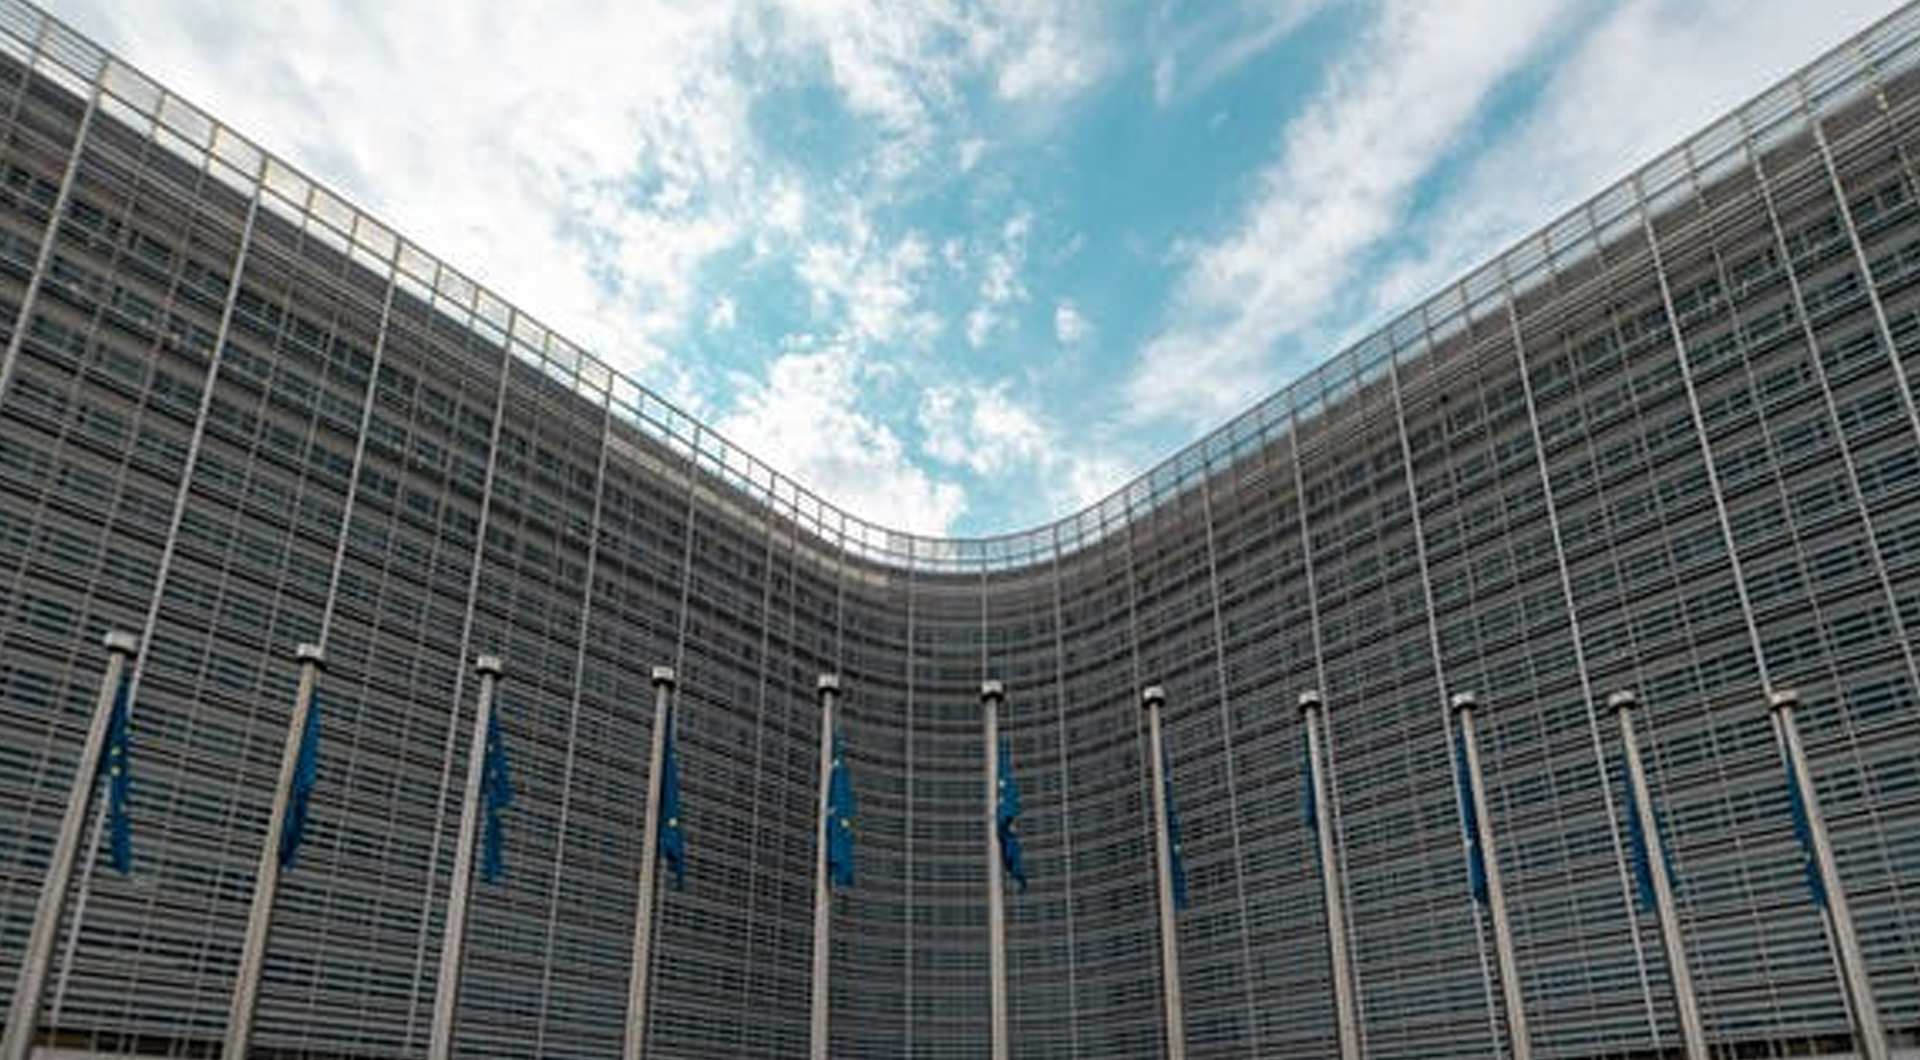 Il TPI, “Strumento di protezione della transizione”, è il nuovo meccanismo messo in atto dalla Banca Centrale Europea per dare il colpo di grazia alla nostra sovranità finanziaria, economica e politica